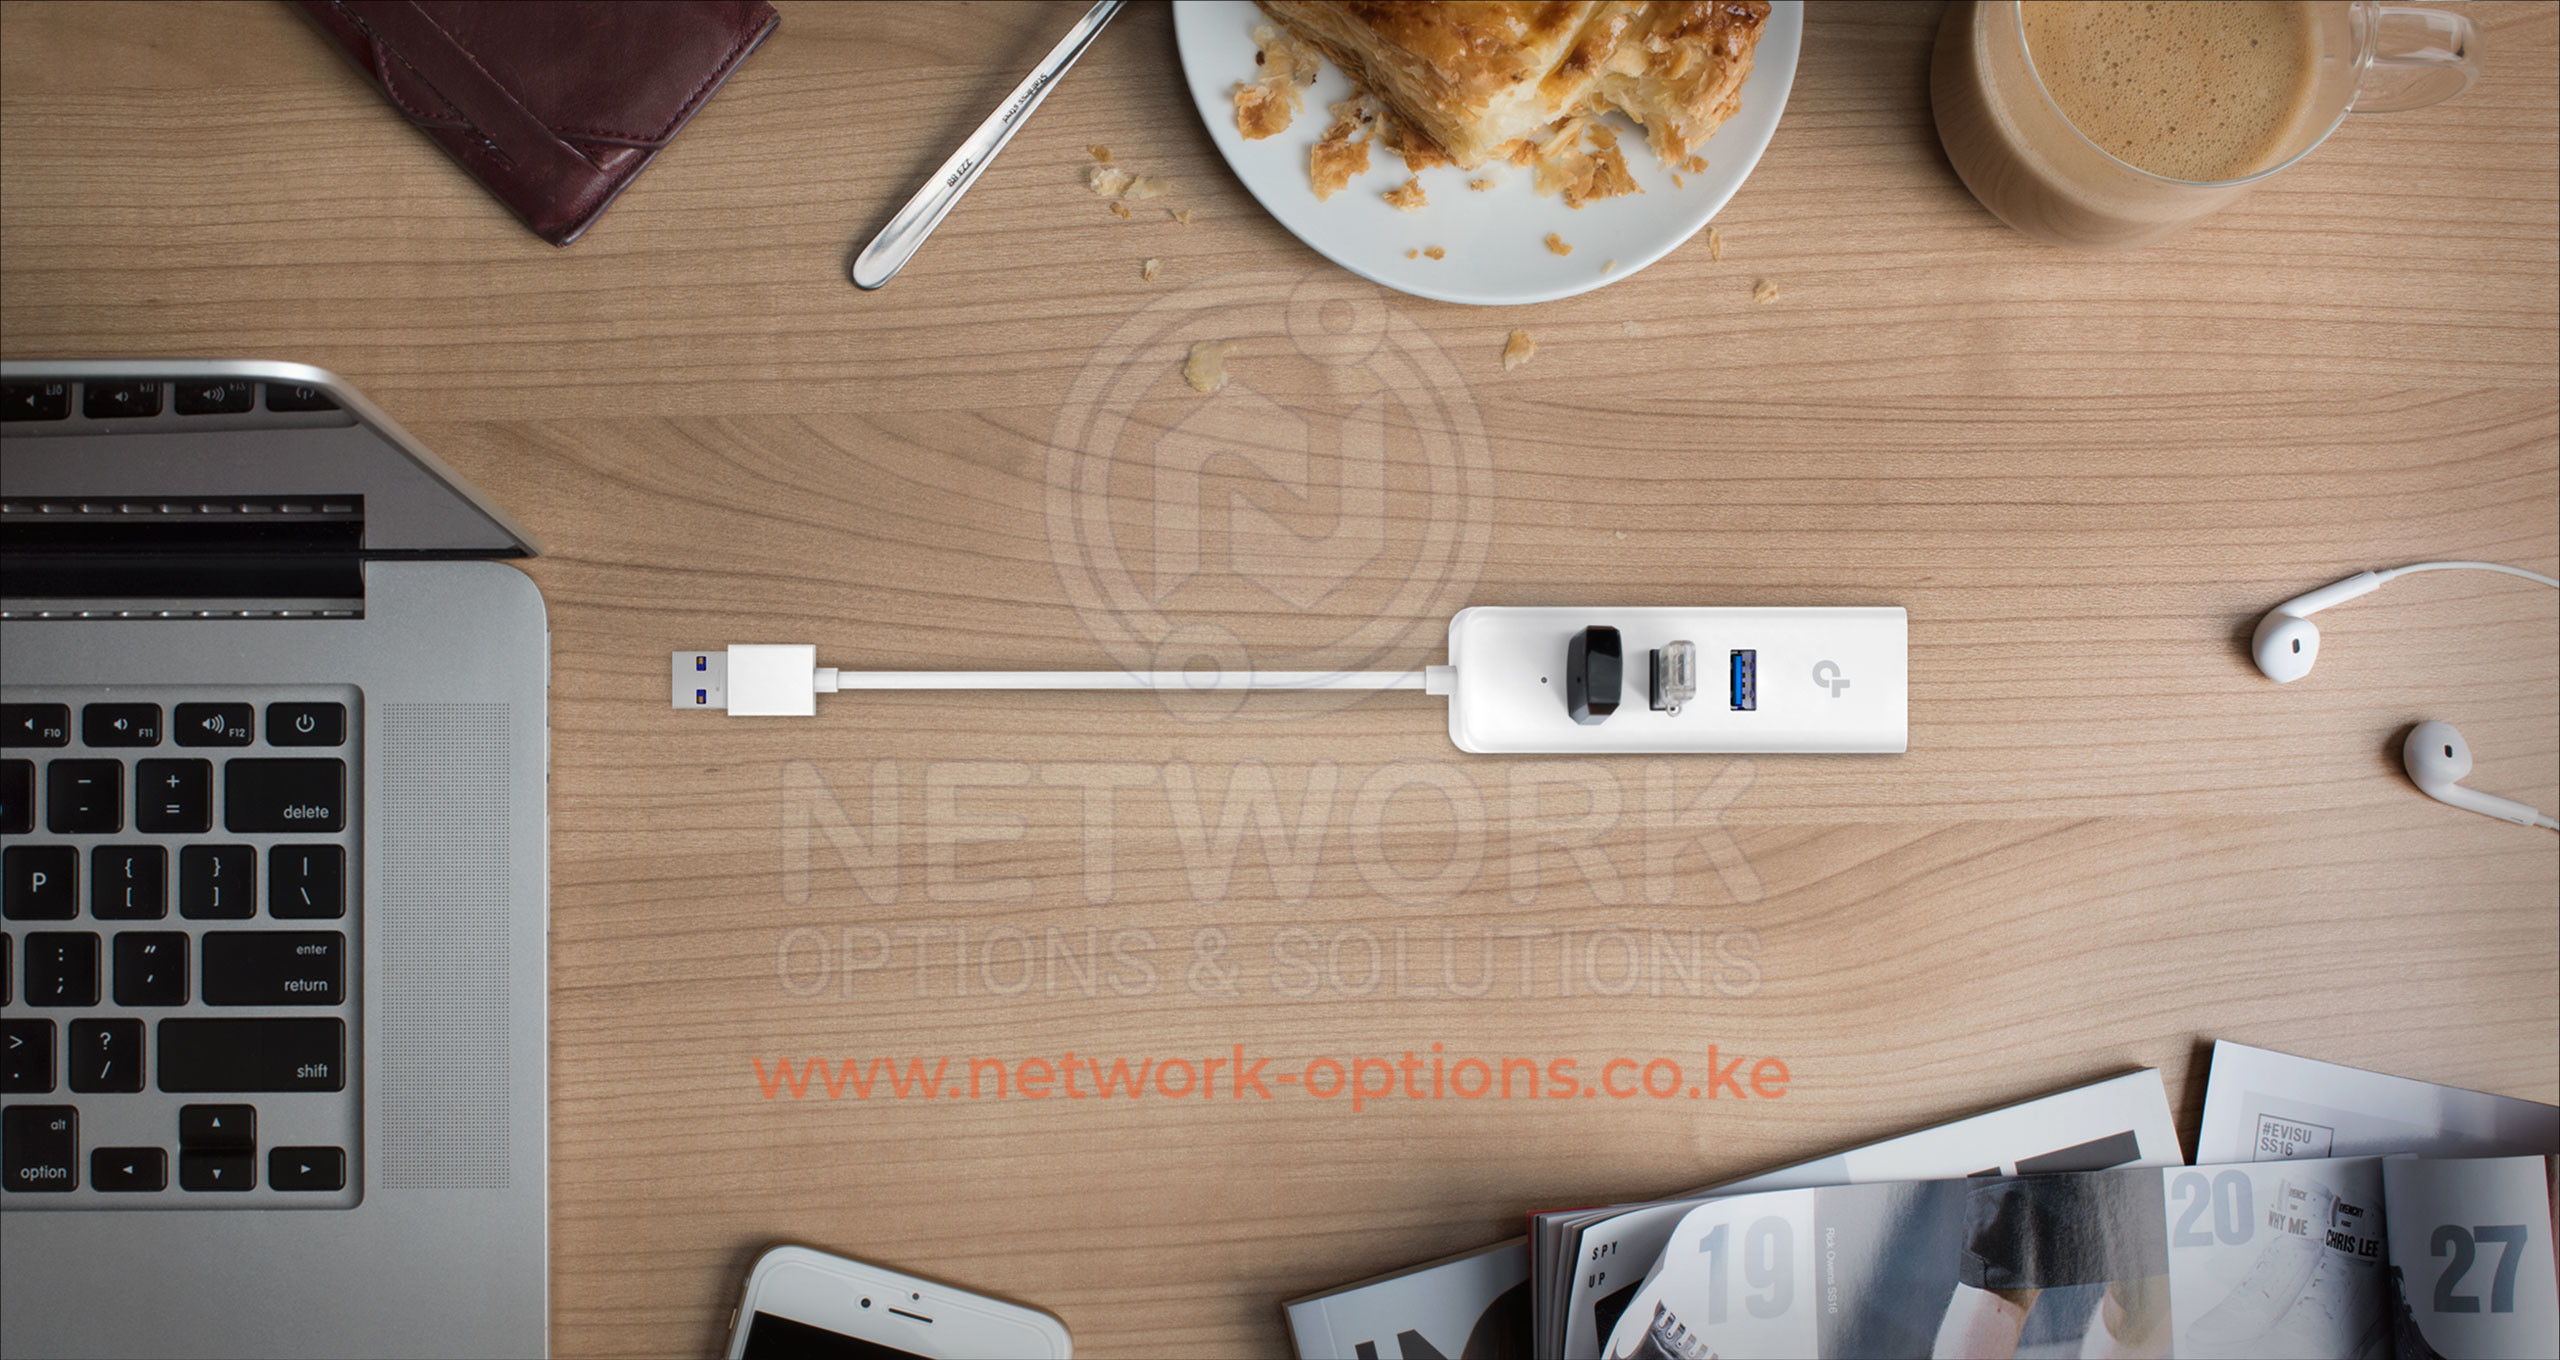 TP-Link UE330 3-Port Hub & Gigabit Ethernet Adapter Kenya